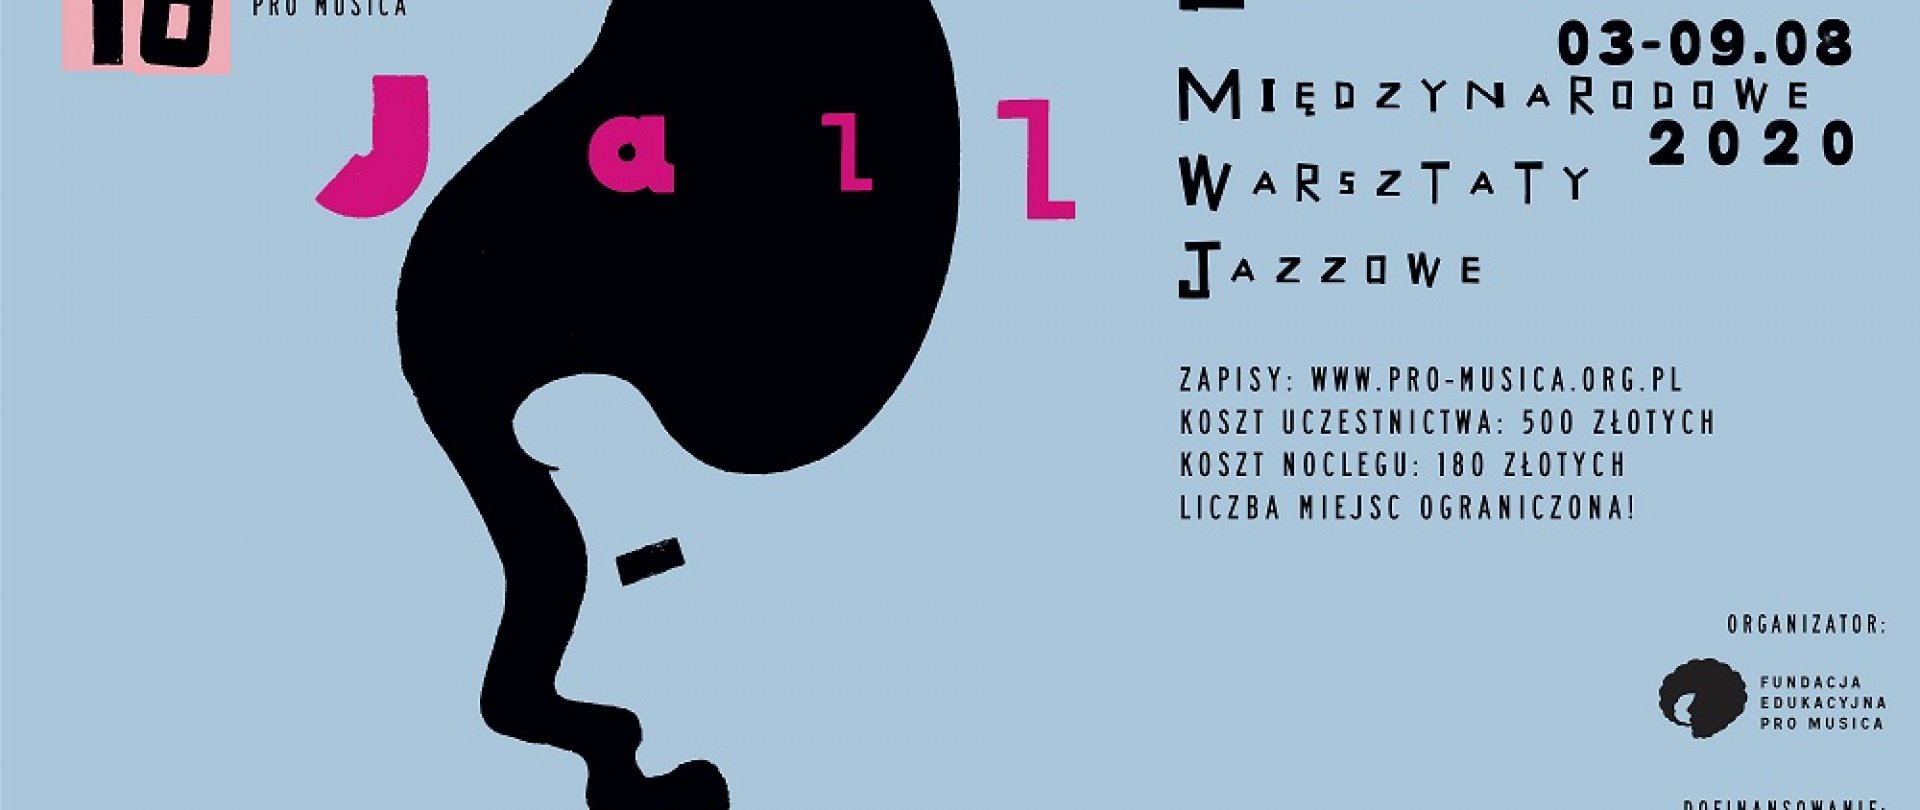 Międzynarodowe Warsztaty Jazzowe w Lesznie